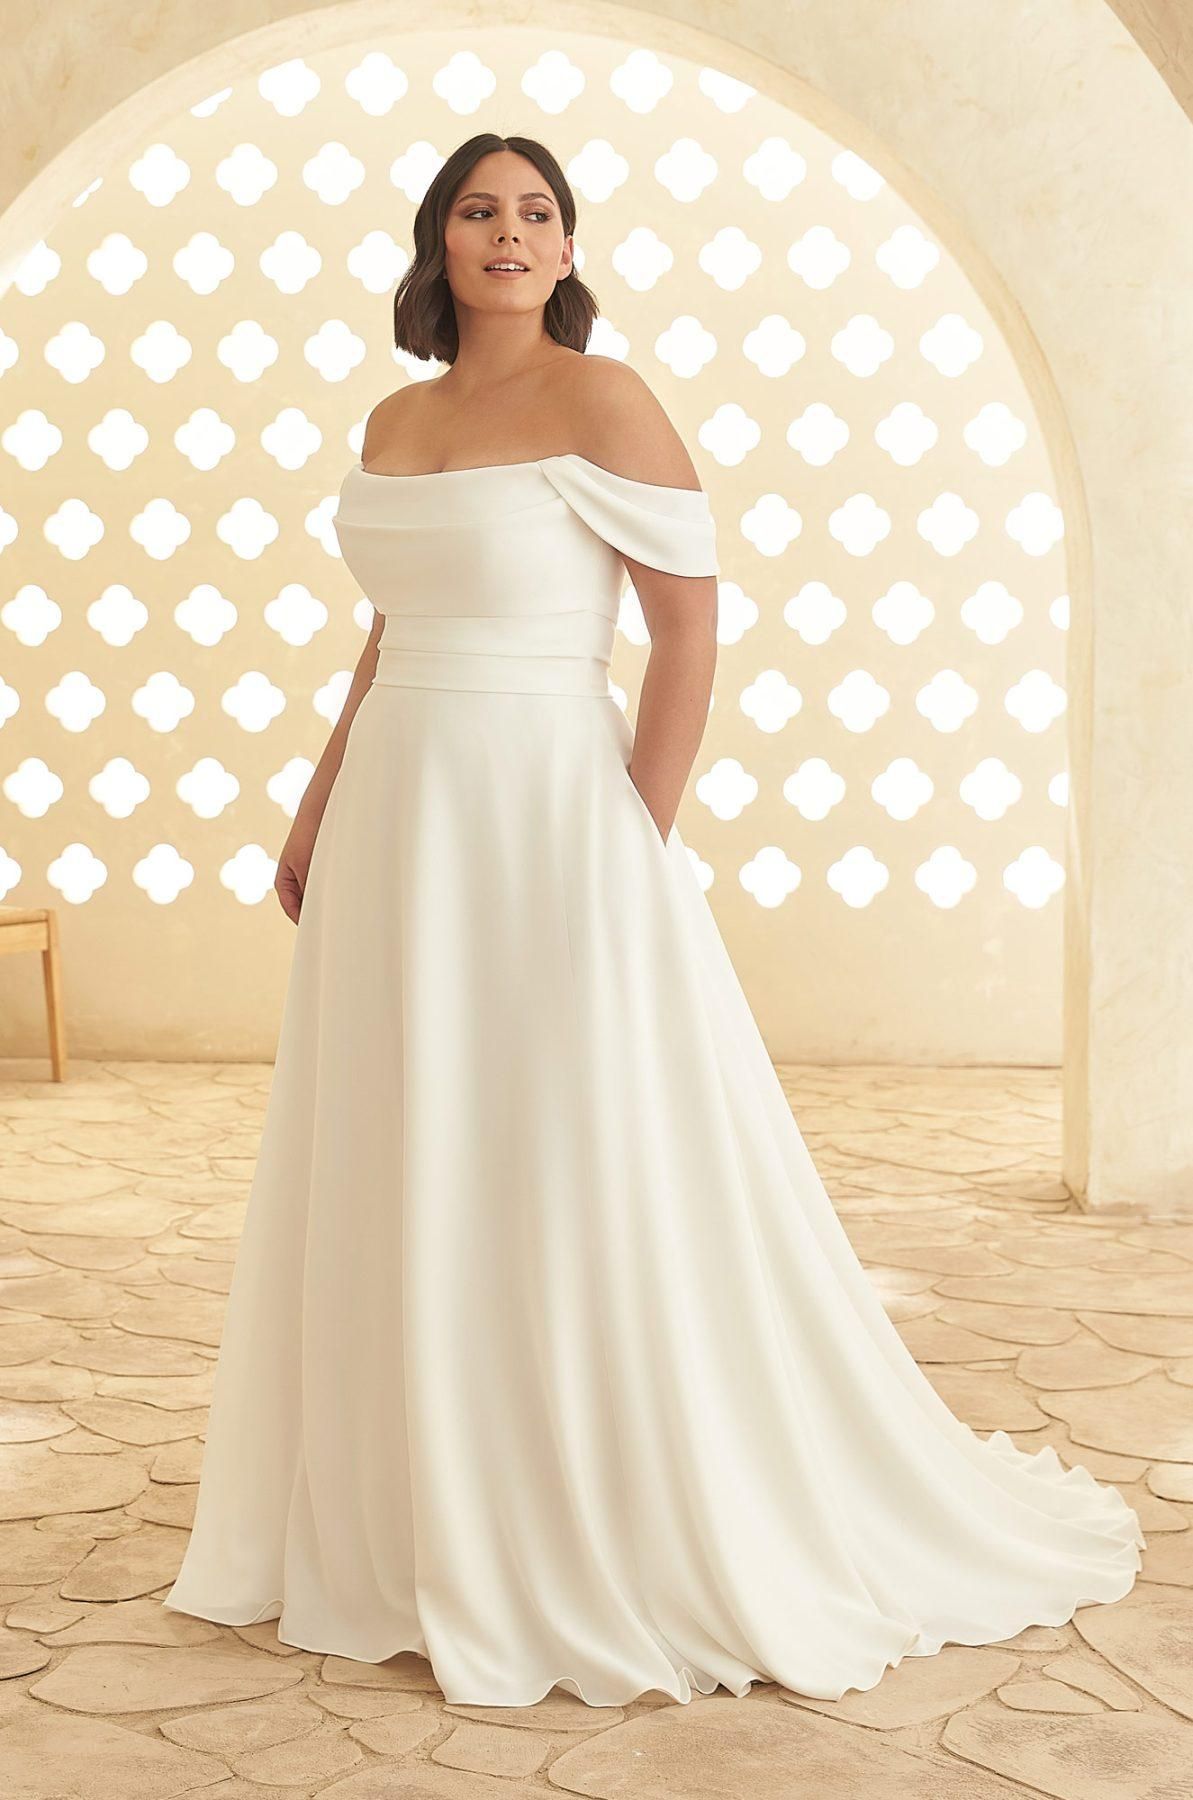 Long Sleeve Wedding Dress Modest Wedding Dress Simple Wedding | Etsy |  Modest wedding dresses, Modest wedding gowns, Long sleeve wedding